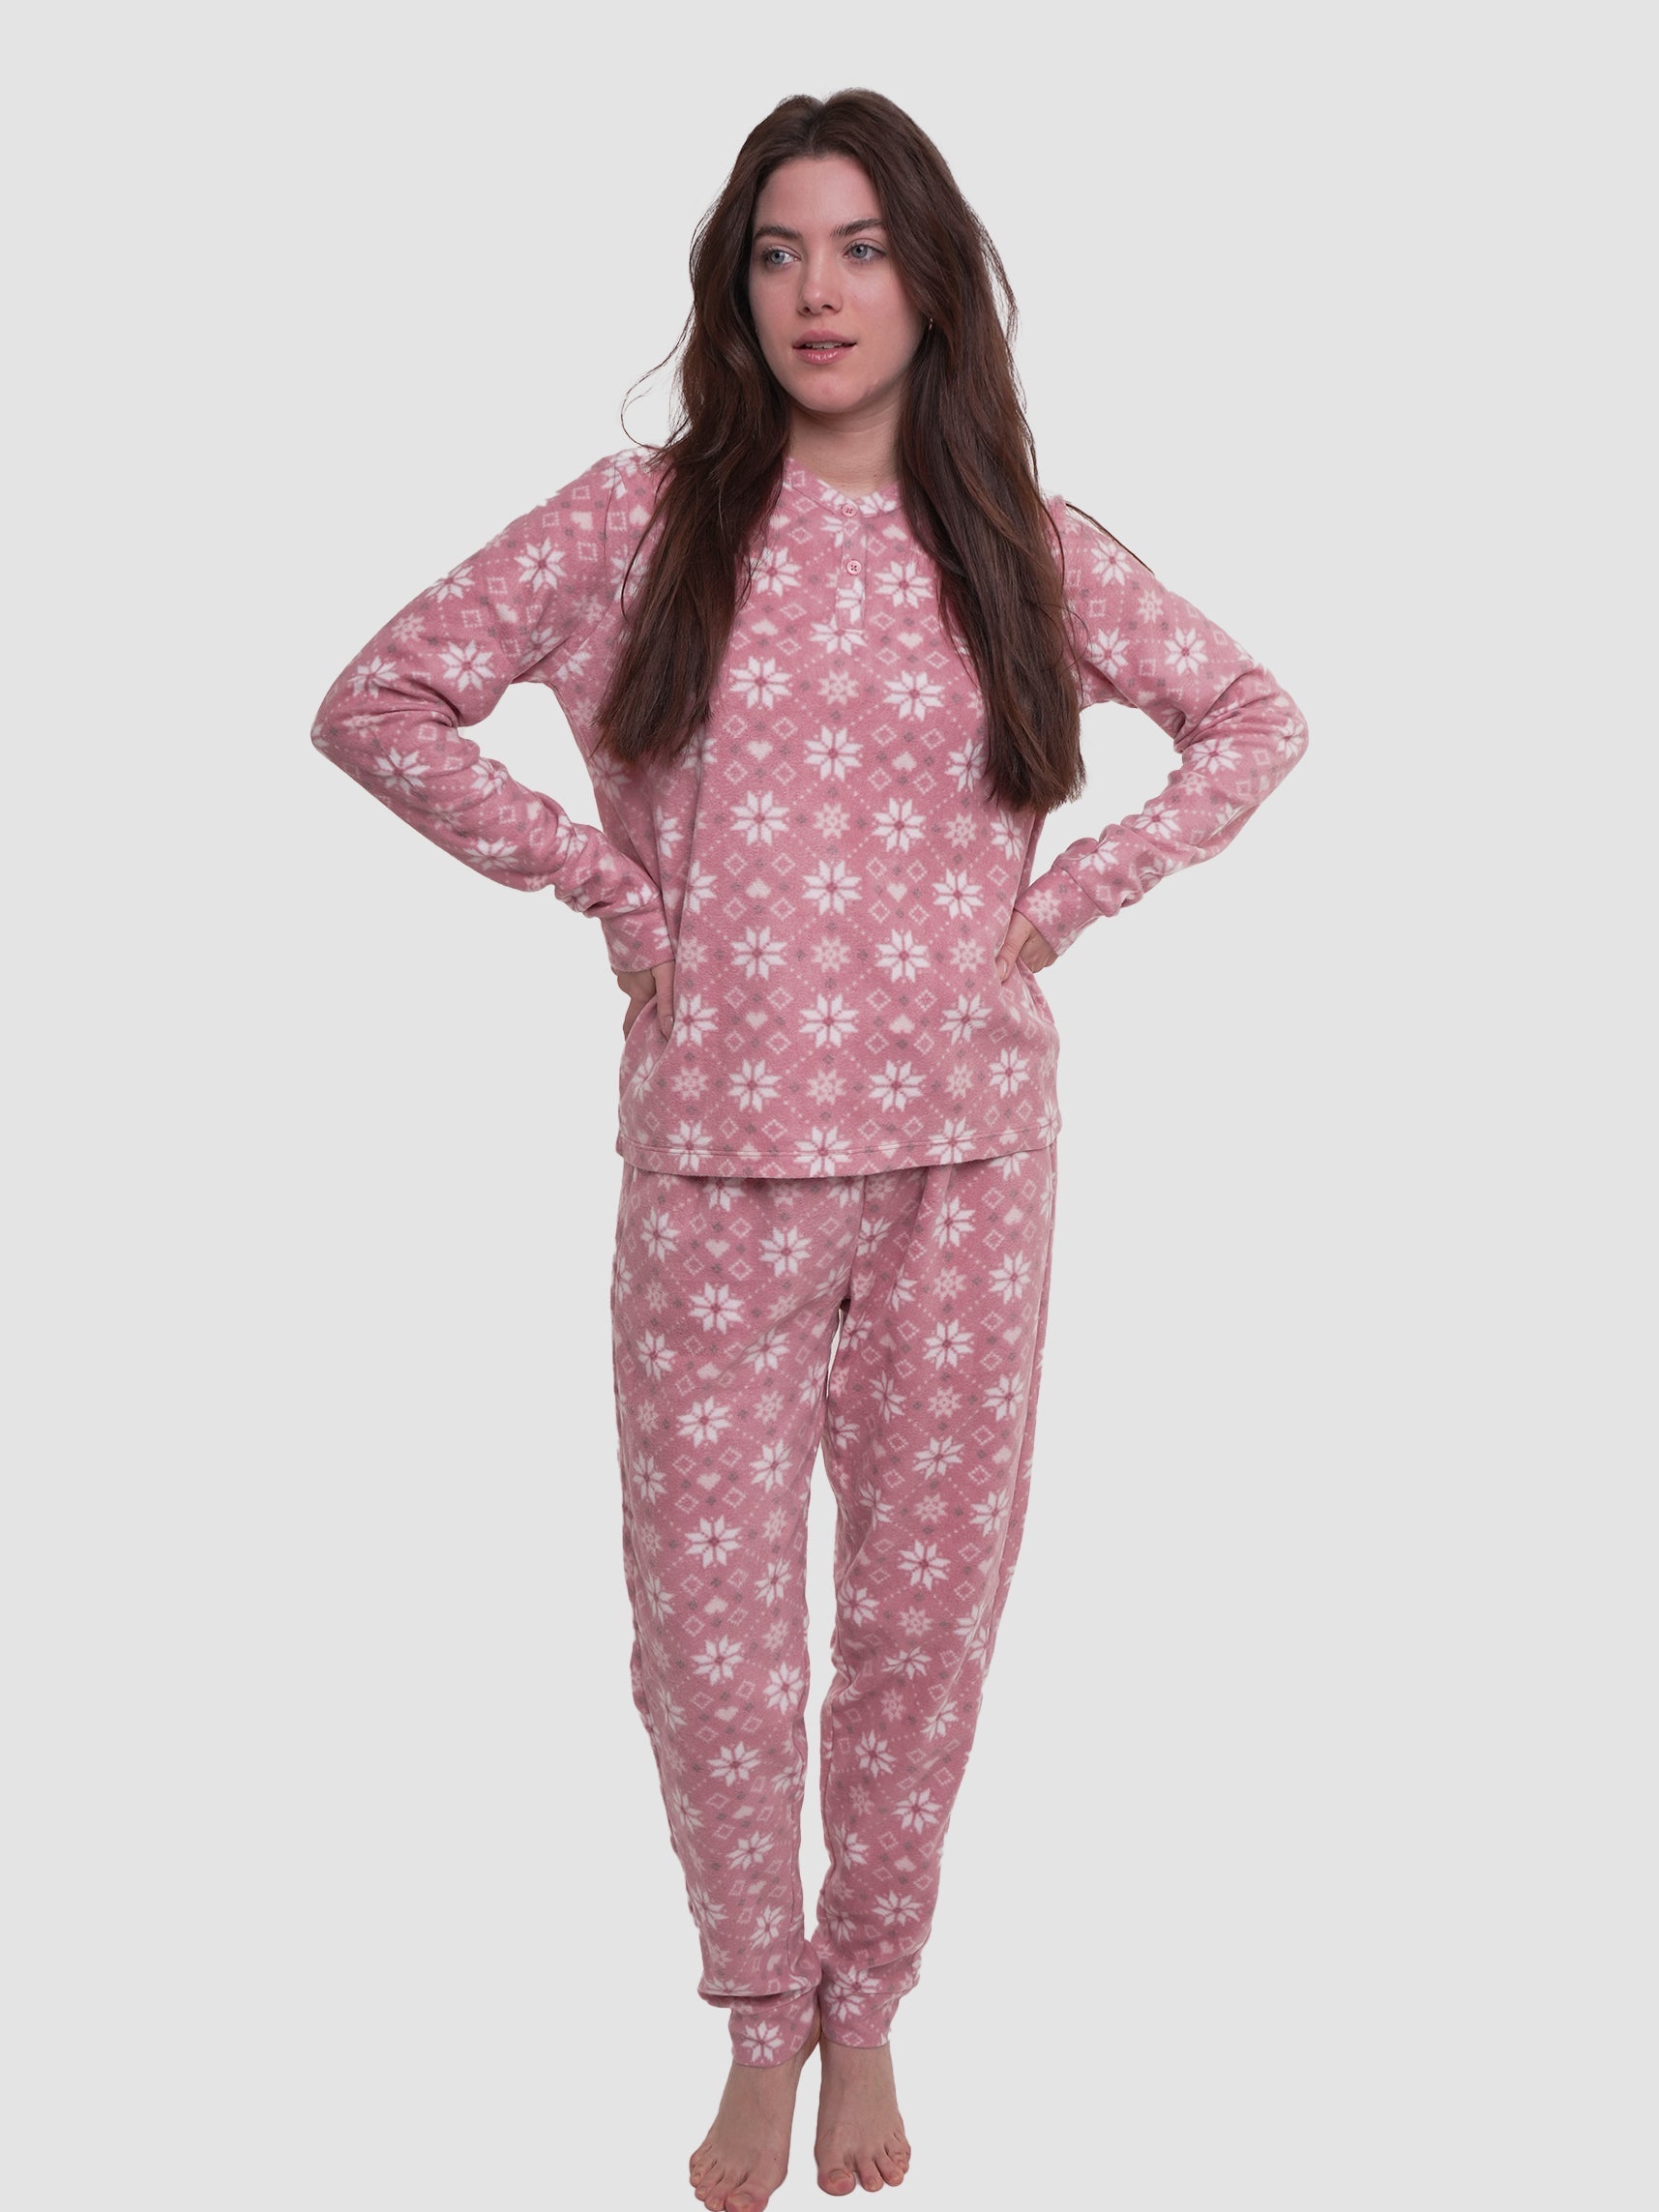 Micro Polar Fleece Star Print Women Sleepwear Long Sleeve Pyjama Set - inteblu